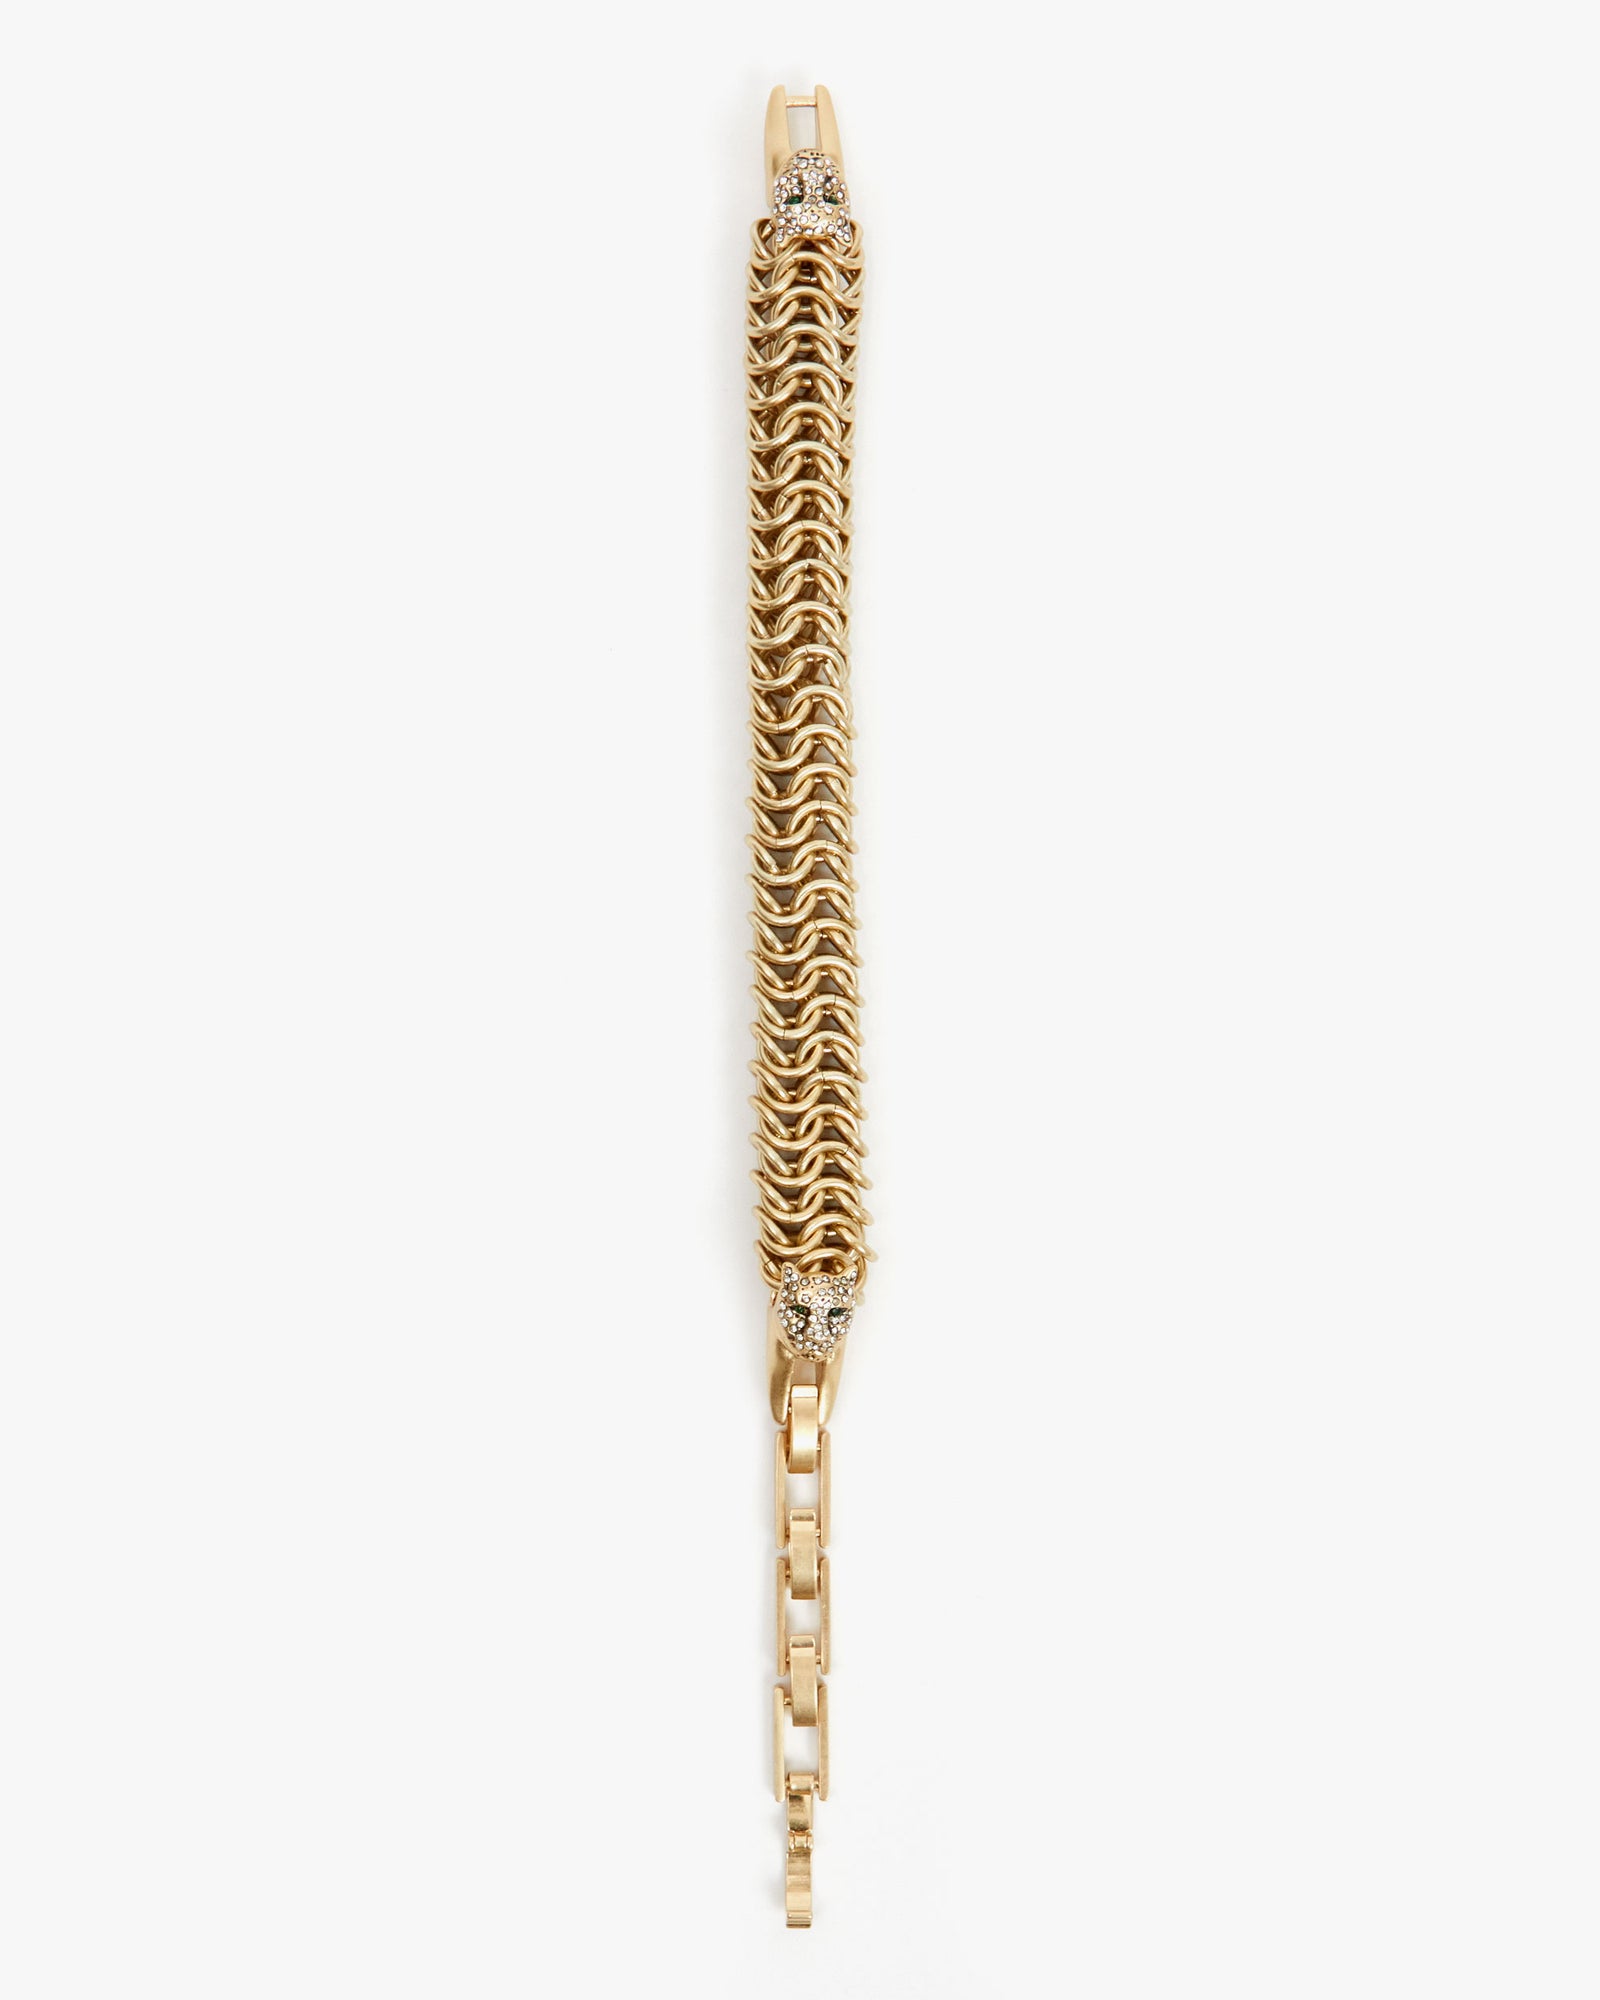 Antique Watch Chain Necklace / Bracelet